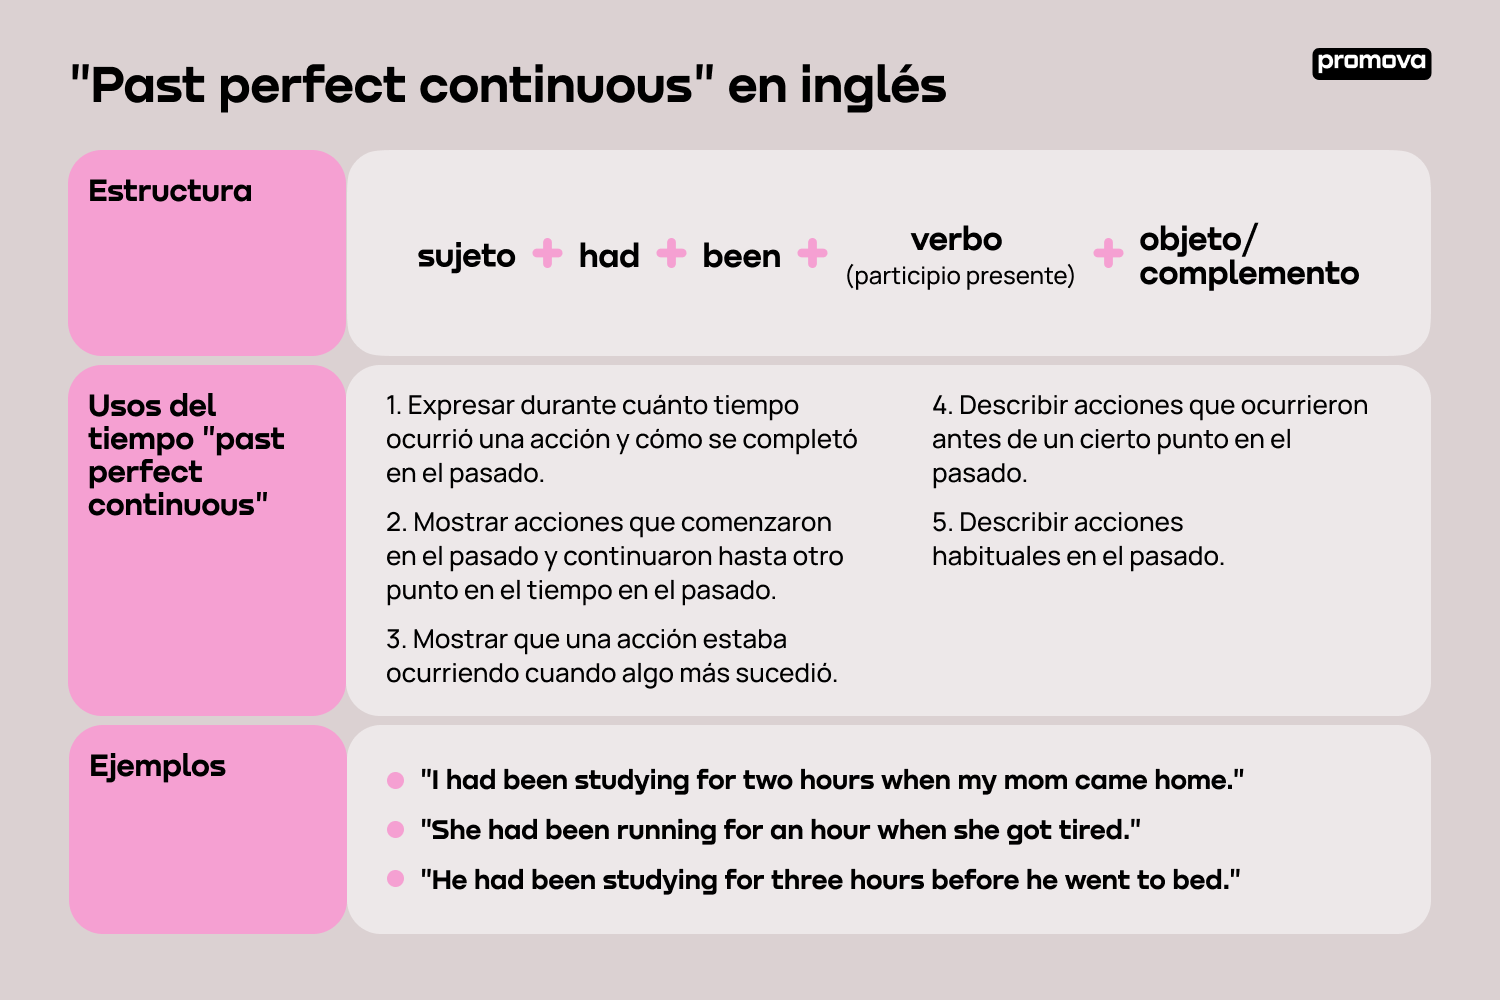 Aprende sobre el past perfect continuous en inglés: Estructura y uso